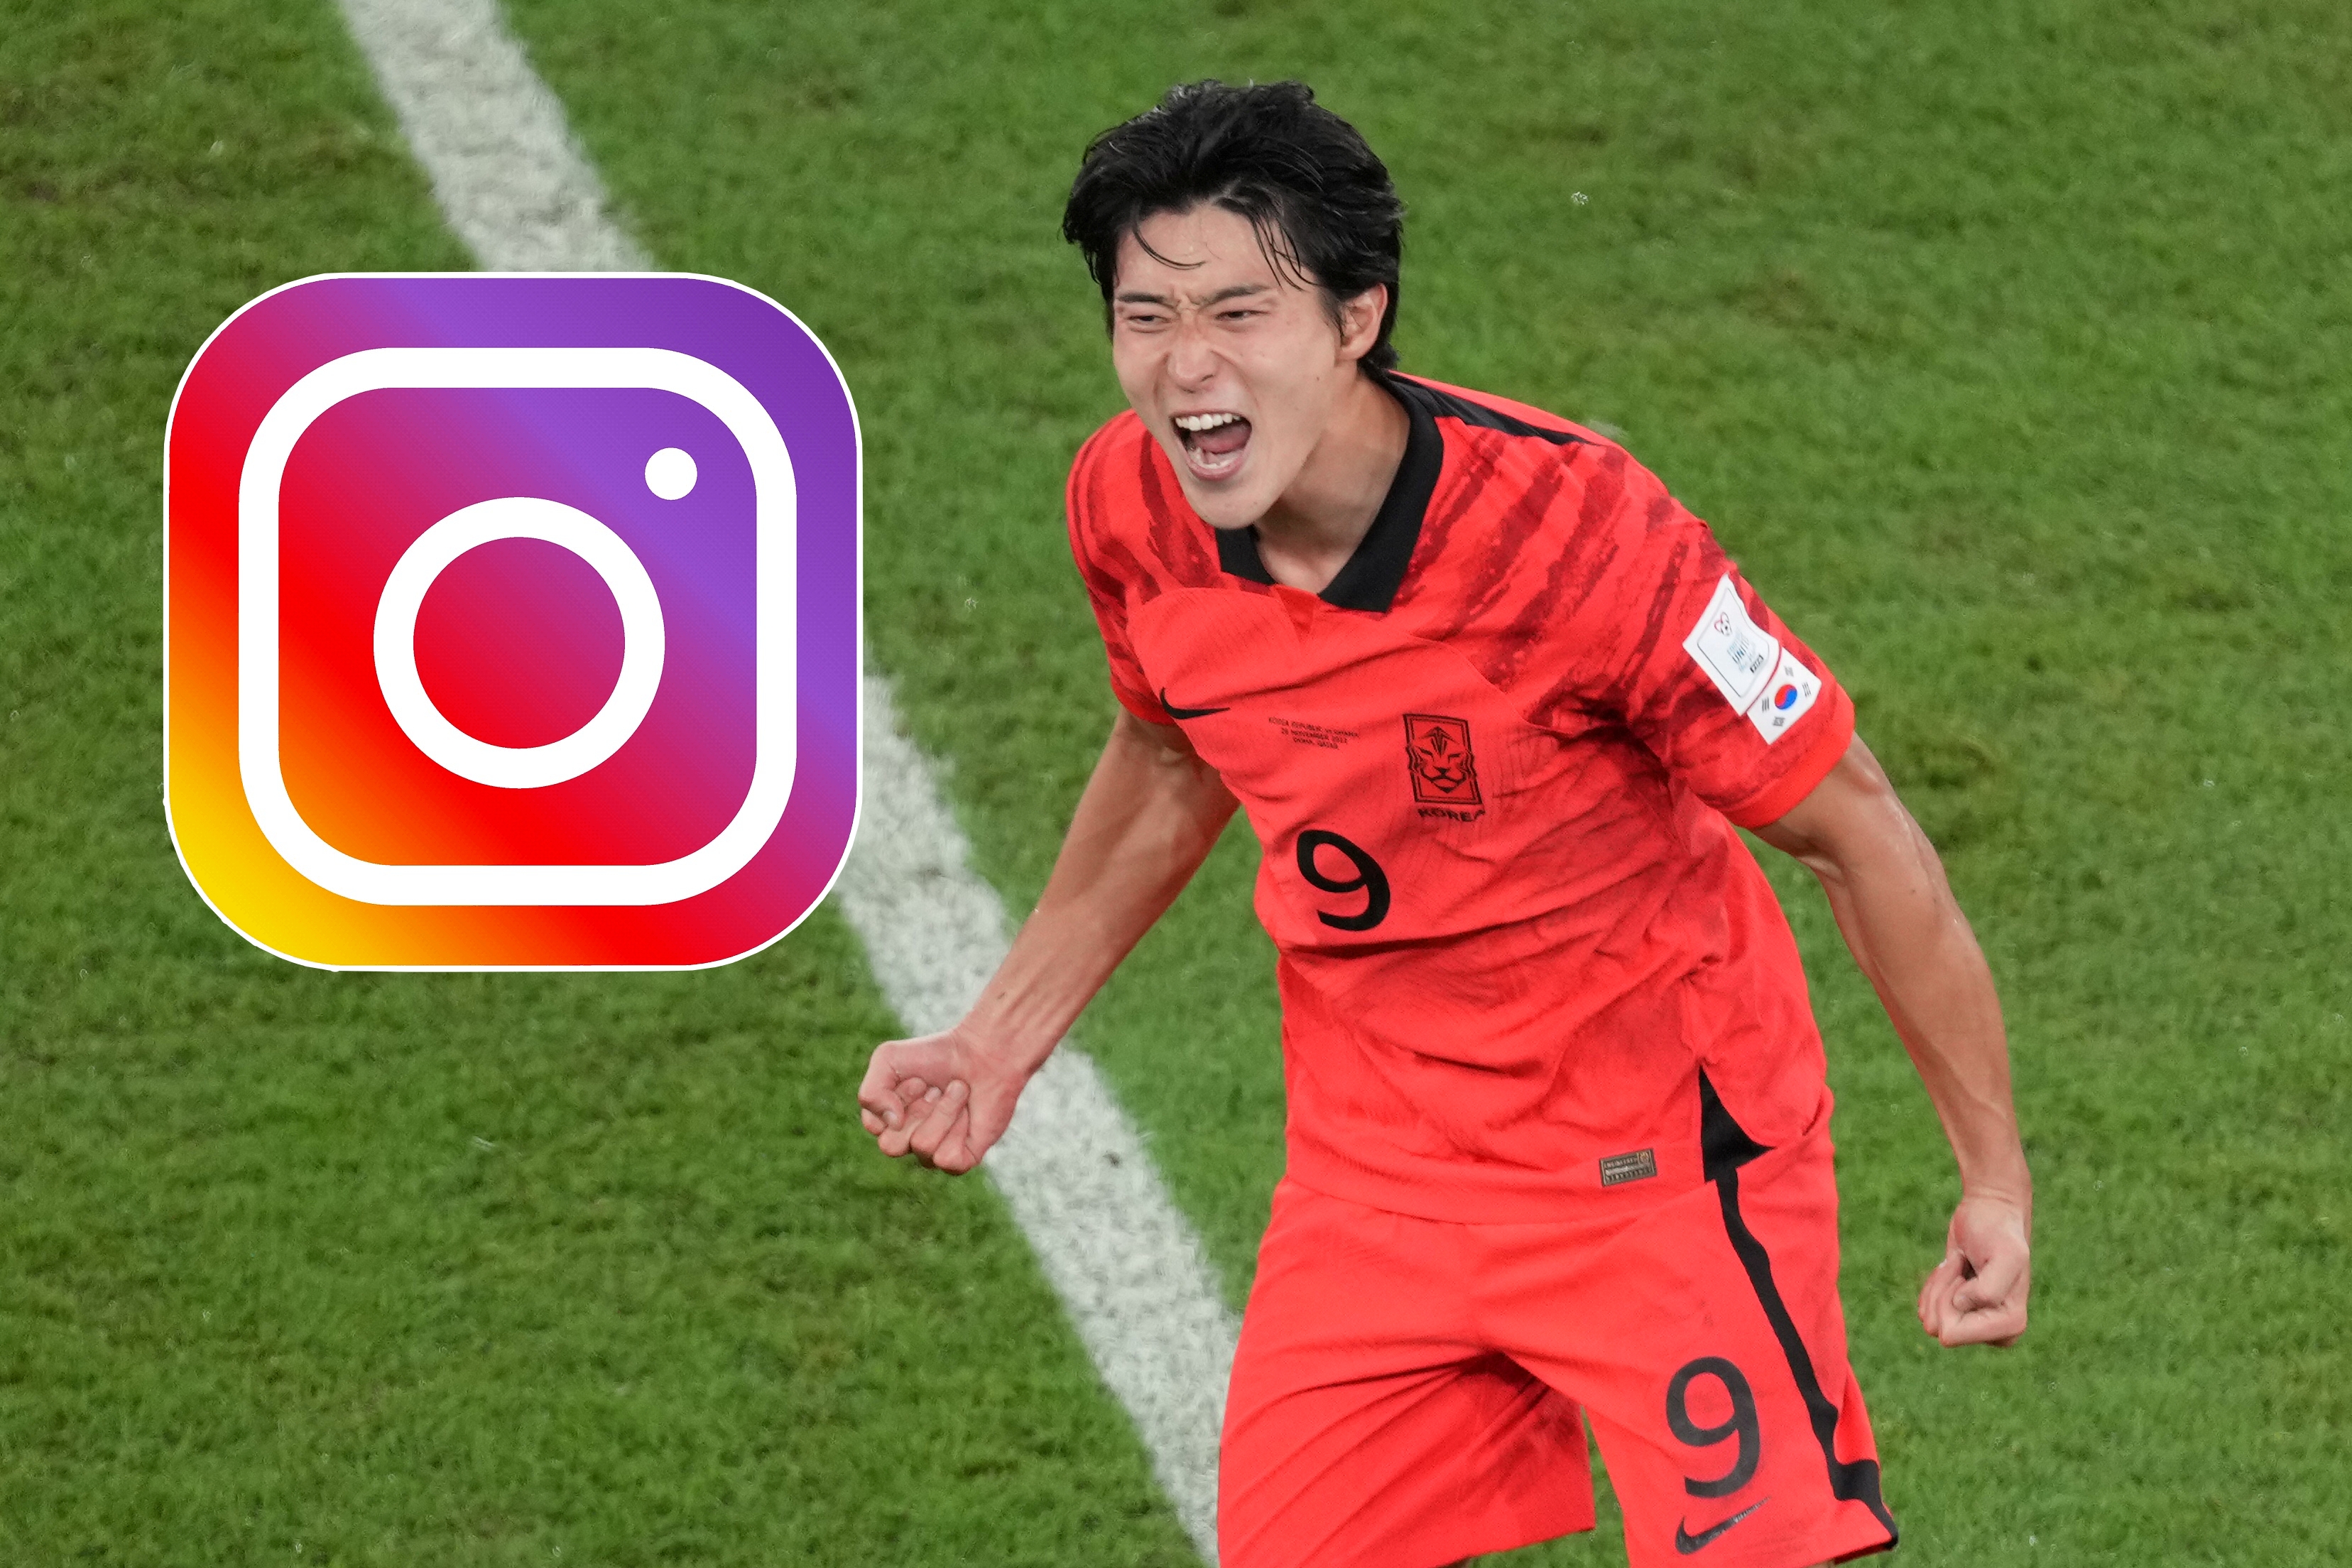 Güney Koreli forvet oyuncusu Cho Gue-sung, şu sıralarda sosyal medyanın gündeminde. 